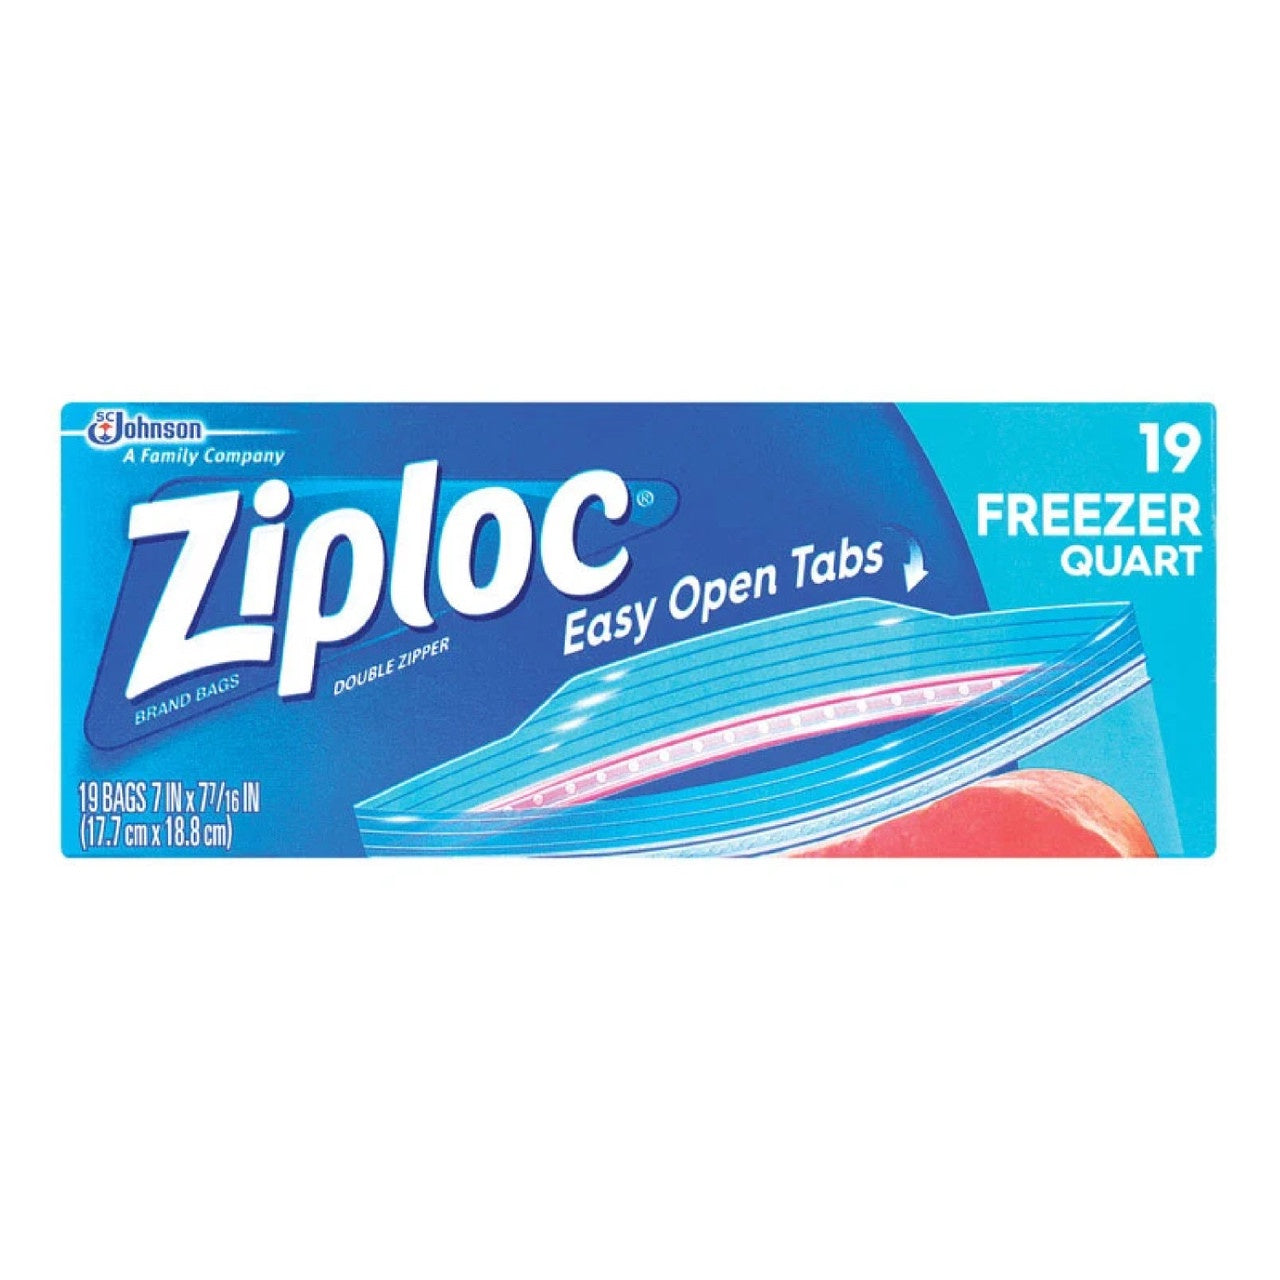 Ziploc Freezer Quart Bags 19ct